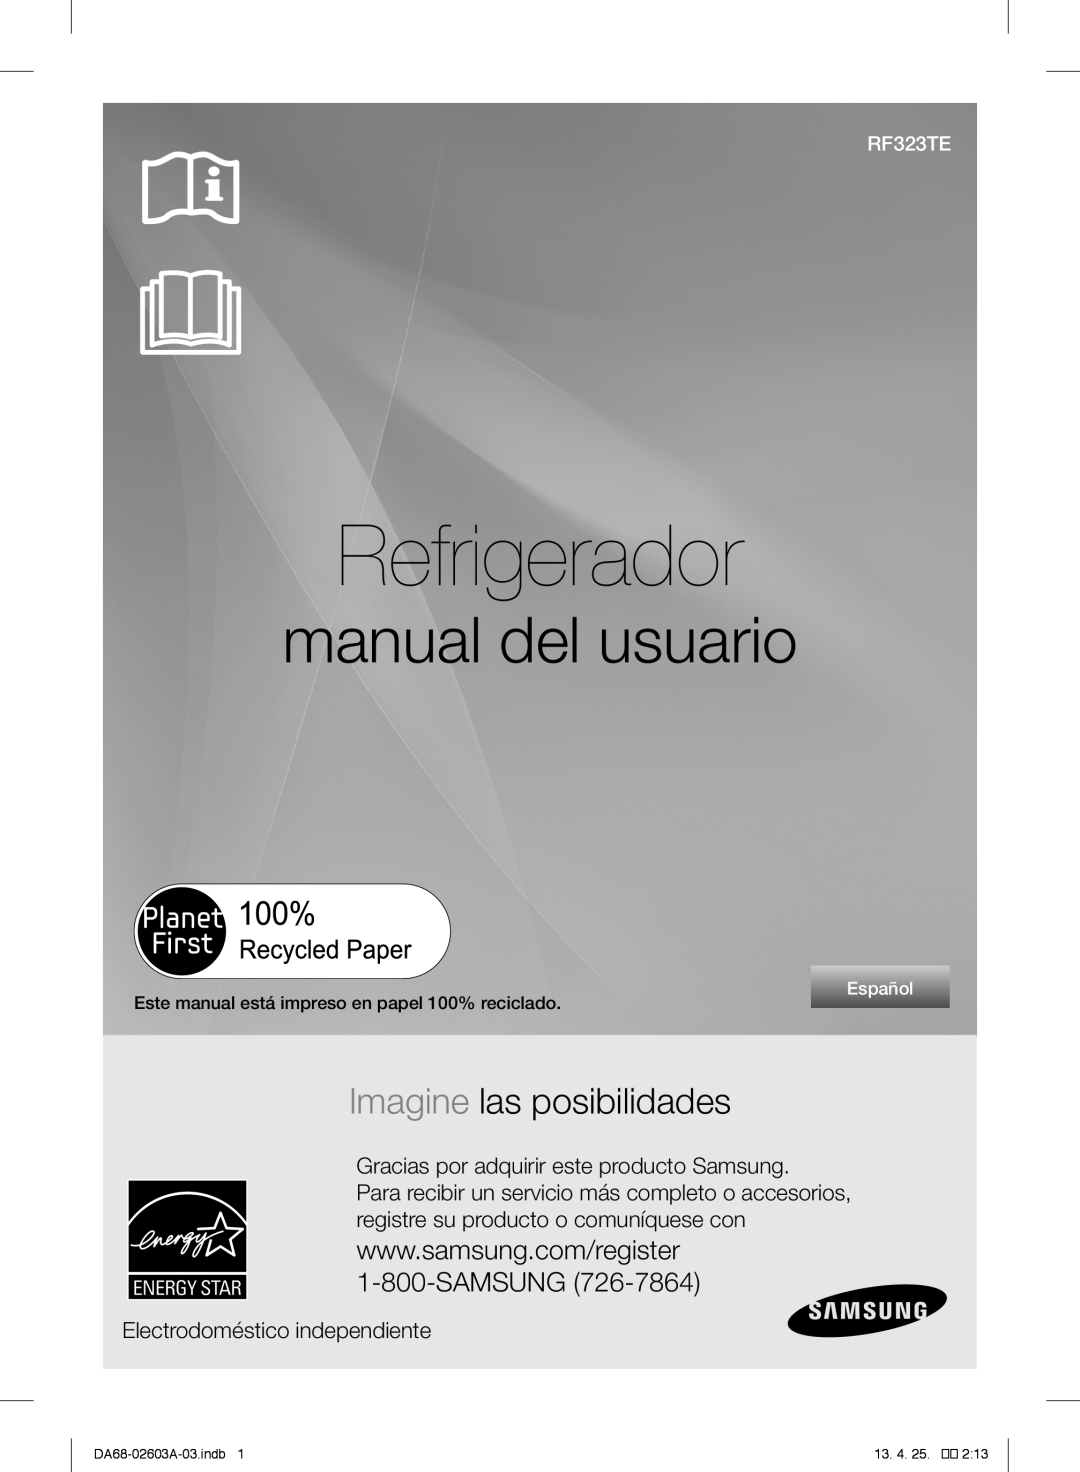 Samsung RF323TEDBBC Refrigerador, manual del usuario, Imagine las posibilidades, Electrodoméstico independiente, Español 